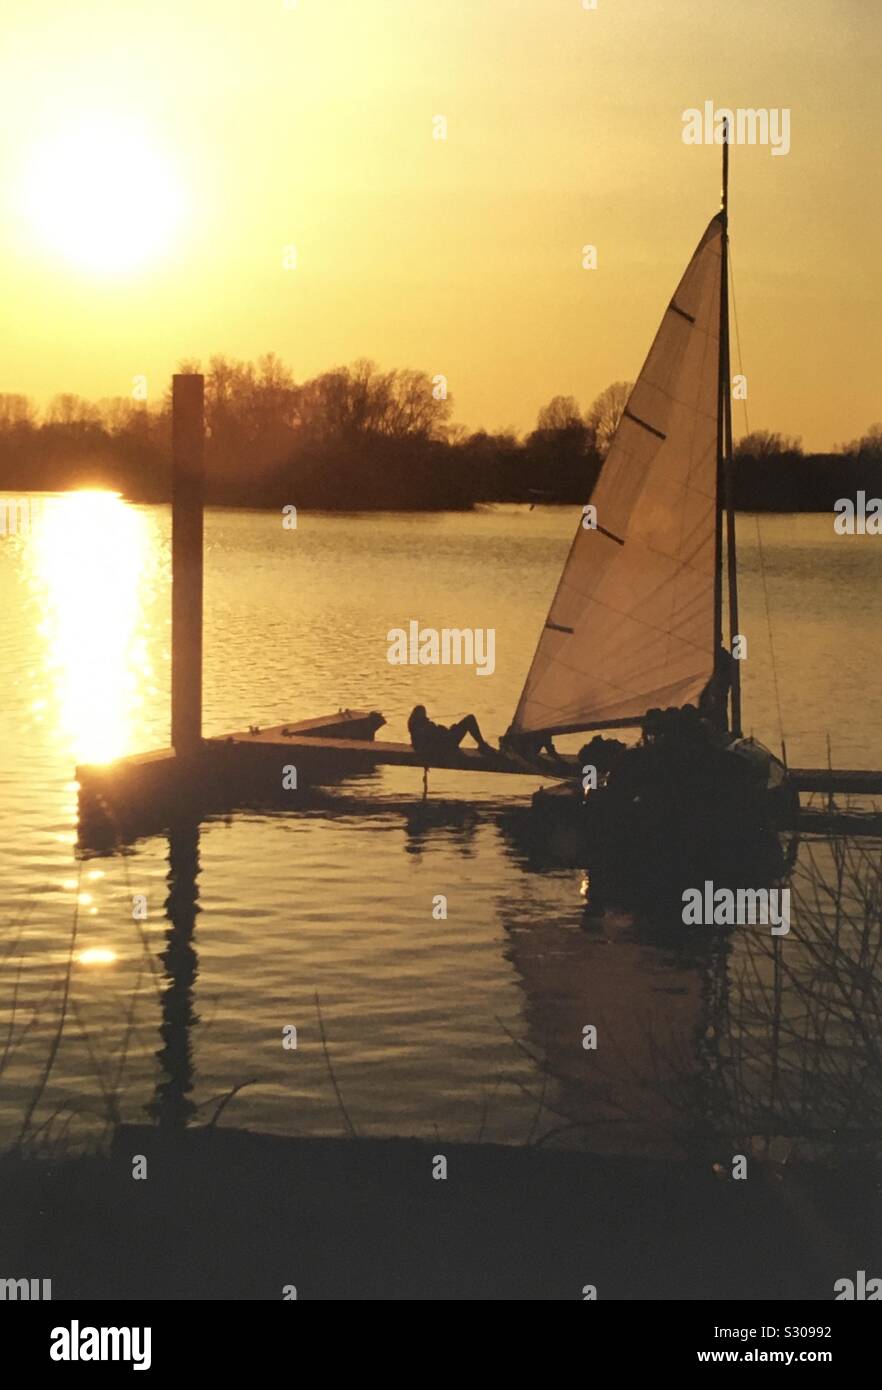 Romantischer Sonnenuntergang am See mit Segelboot Stock Photo